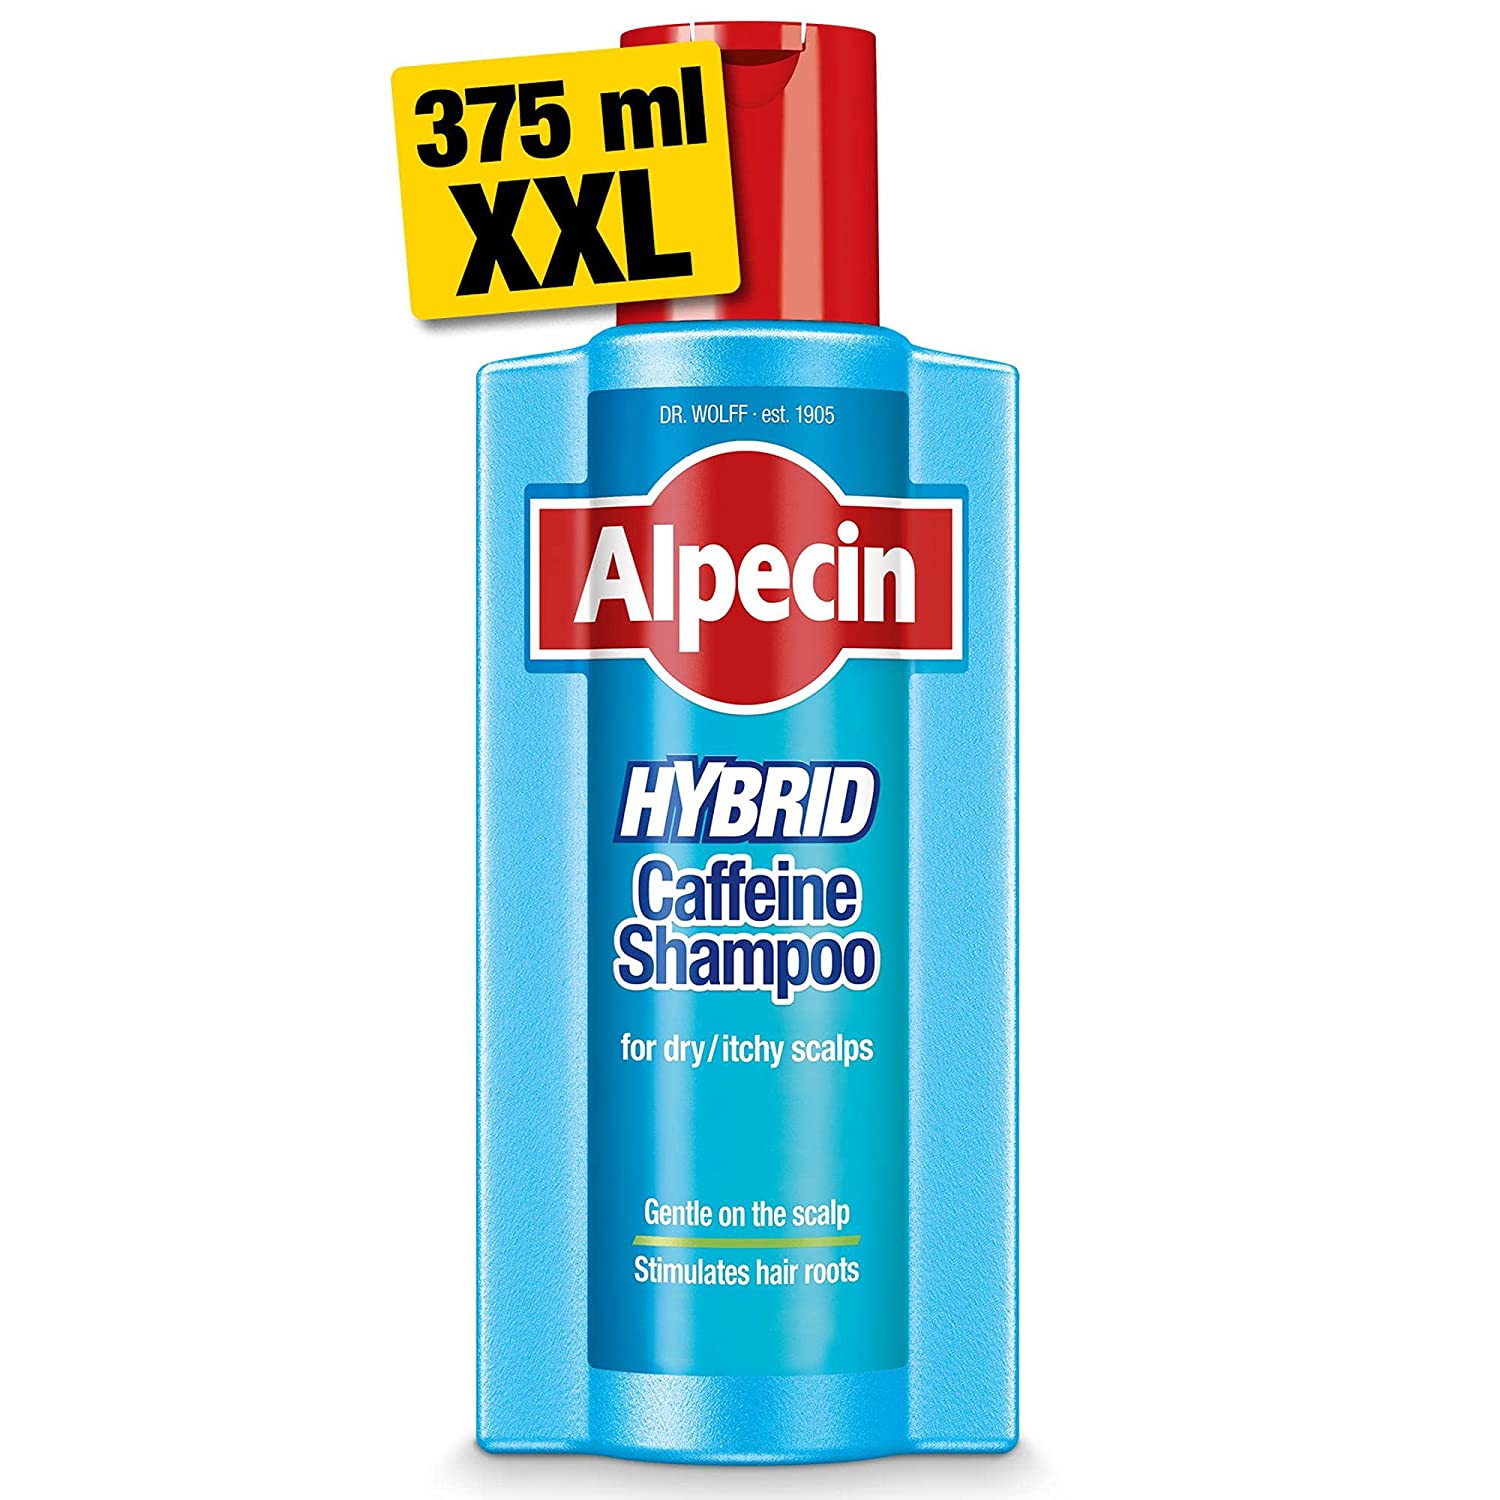 Alpecin Hybrid caffeine shampoo for dry/itchy scalp